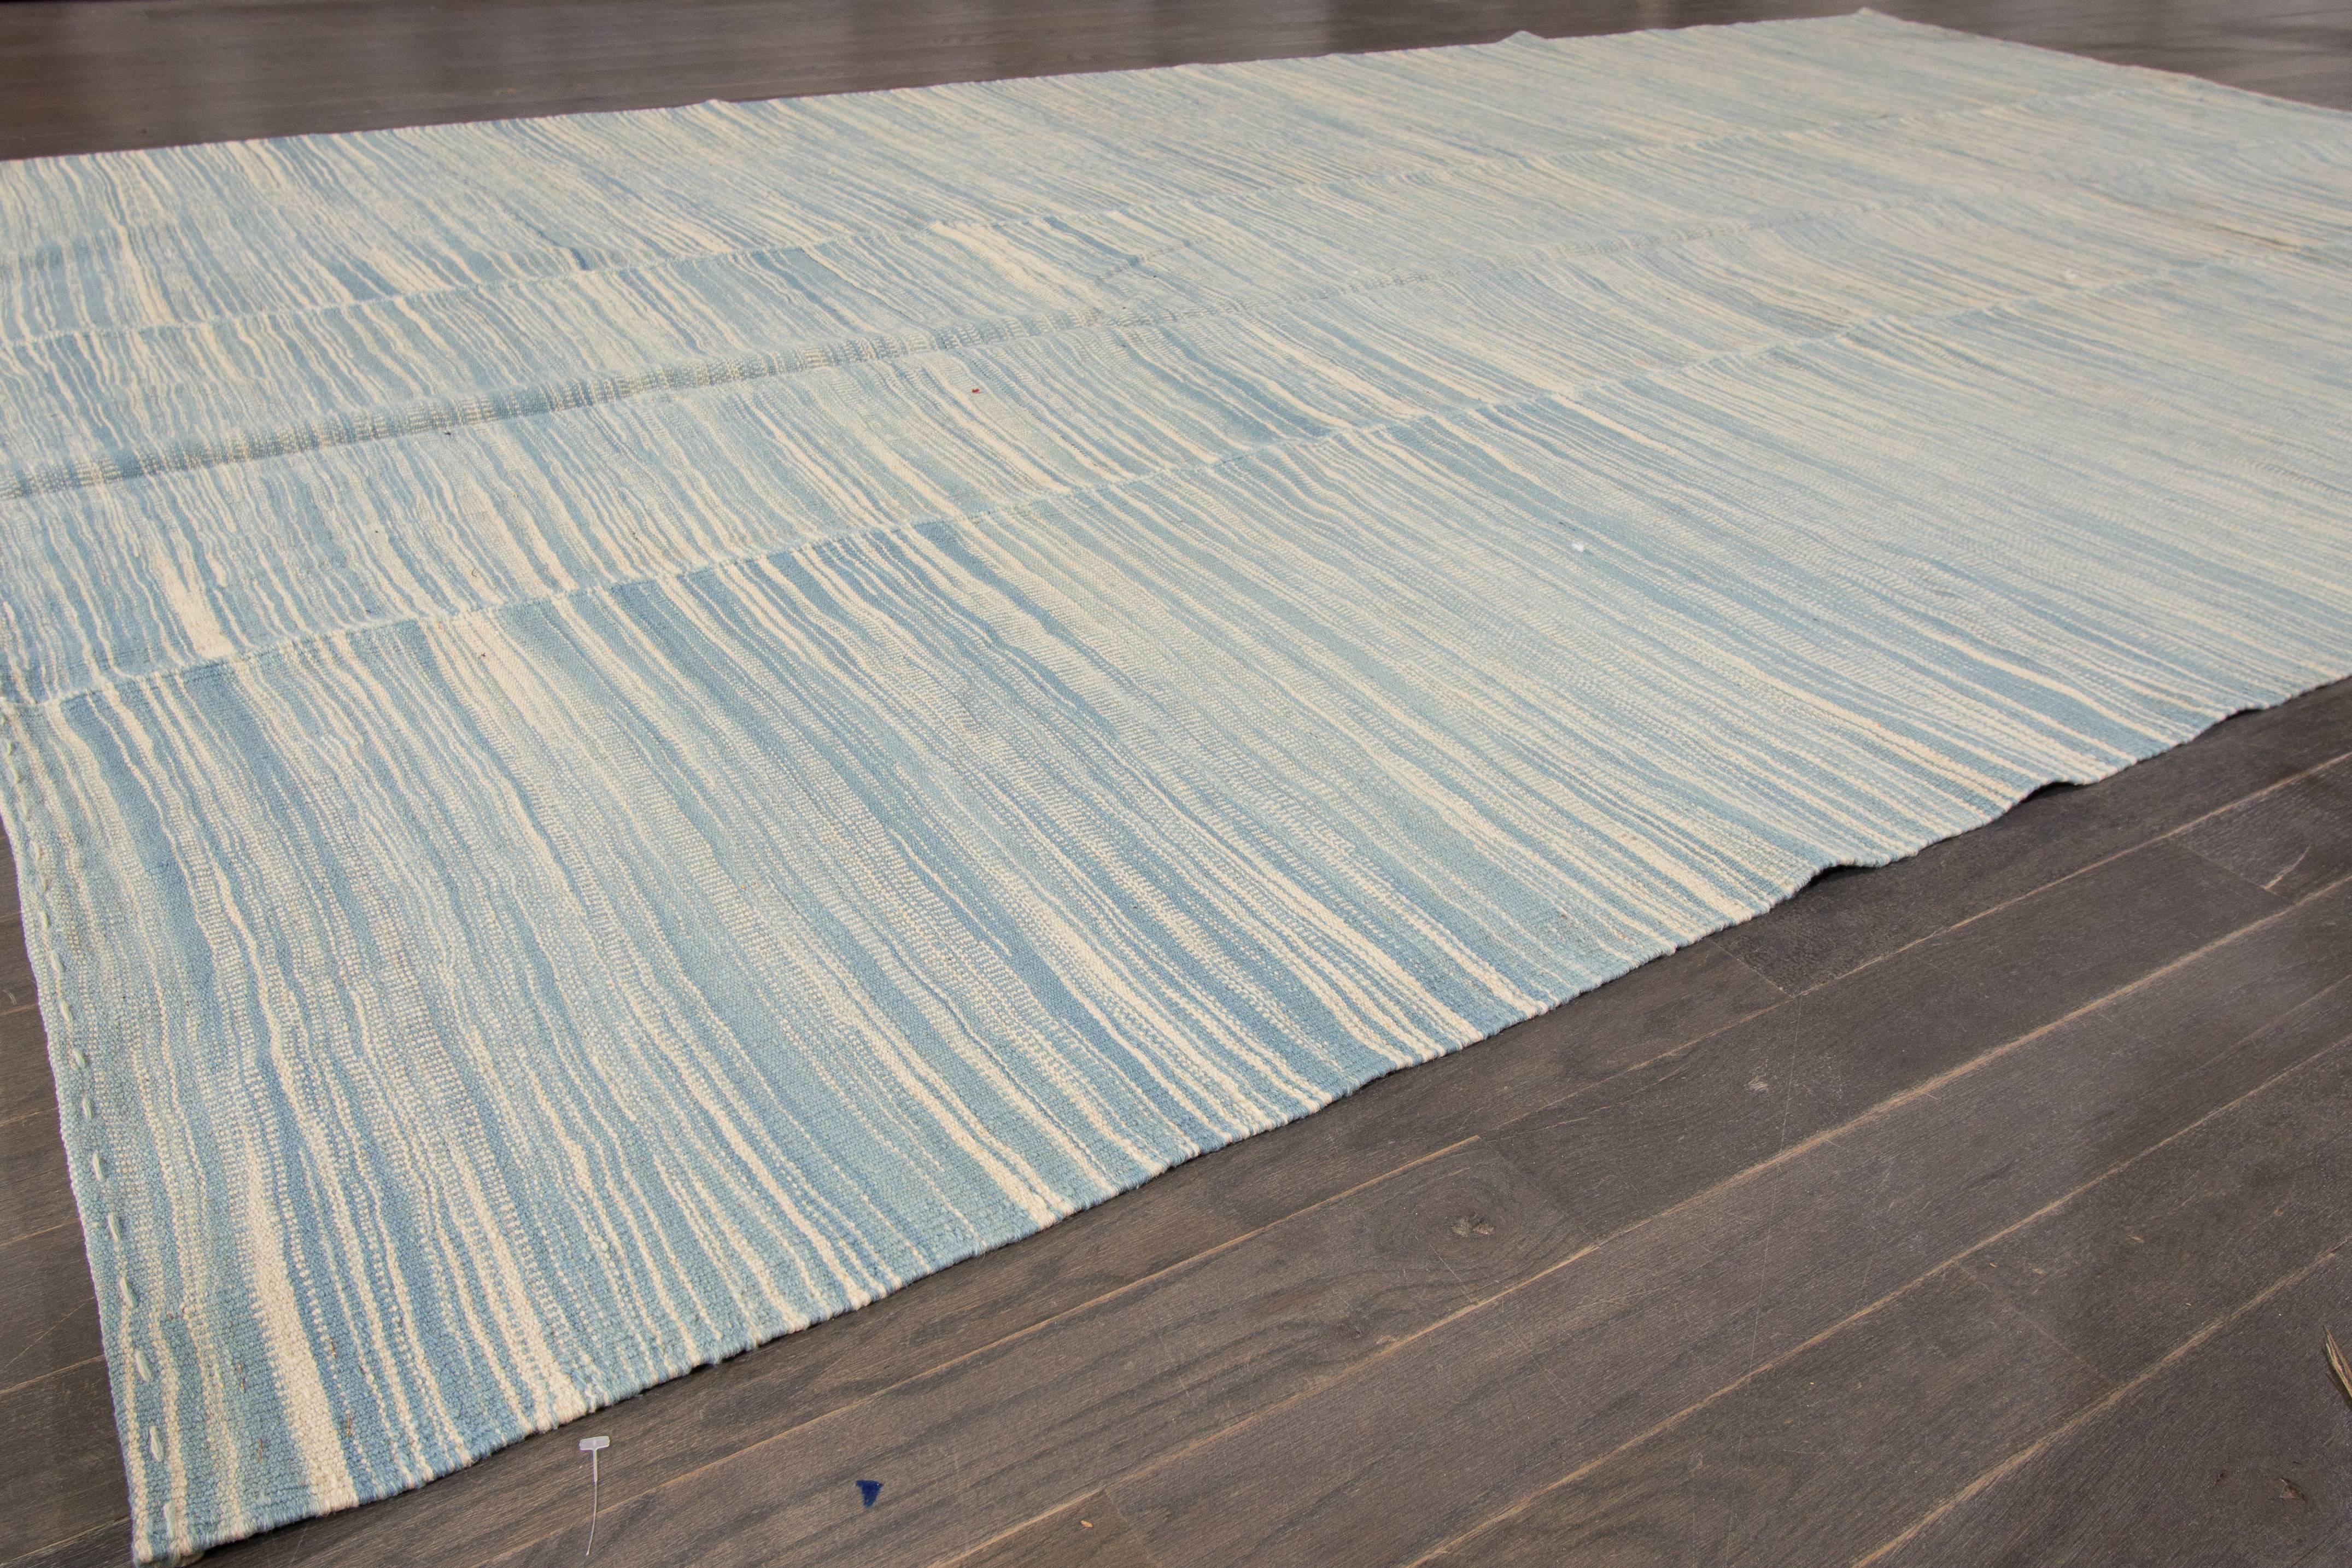 zeitgenössischer türkischer Kelim-Teppich des 21. Jahrhunderts mit einem hellblauen und elfenbeinfarbenen, strukturierten Gesamtbild. Maße 6,08x10,11.